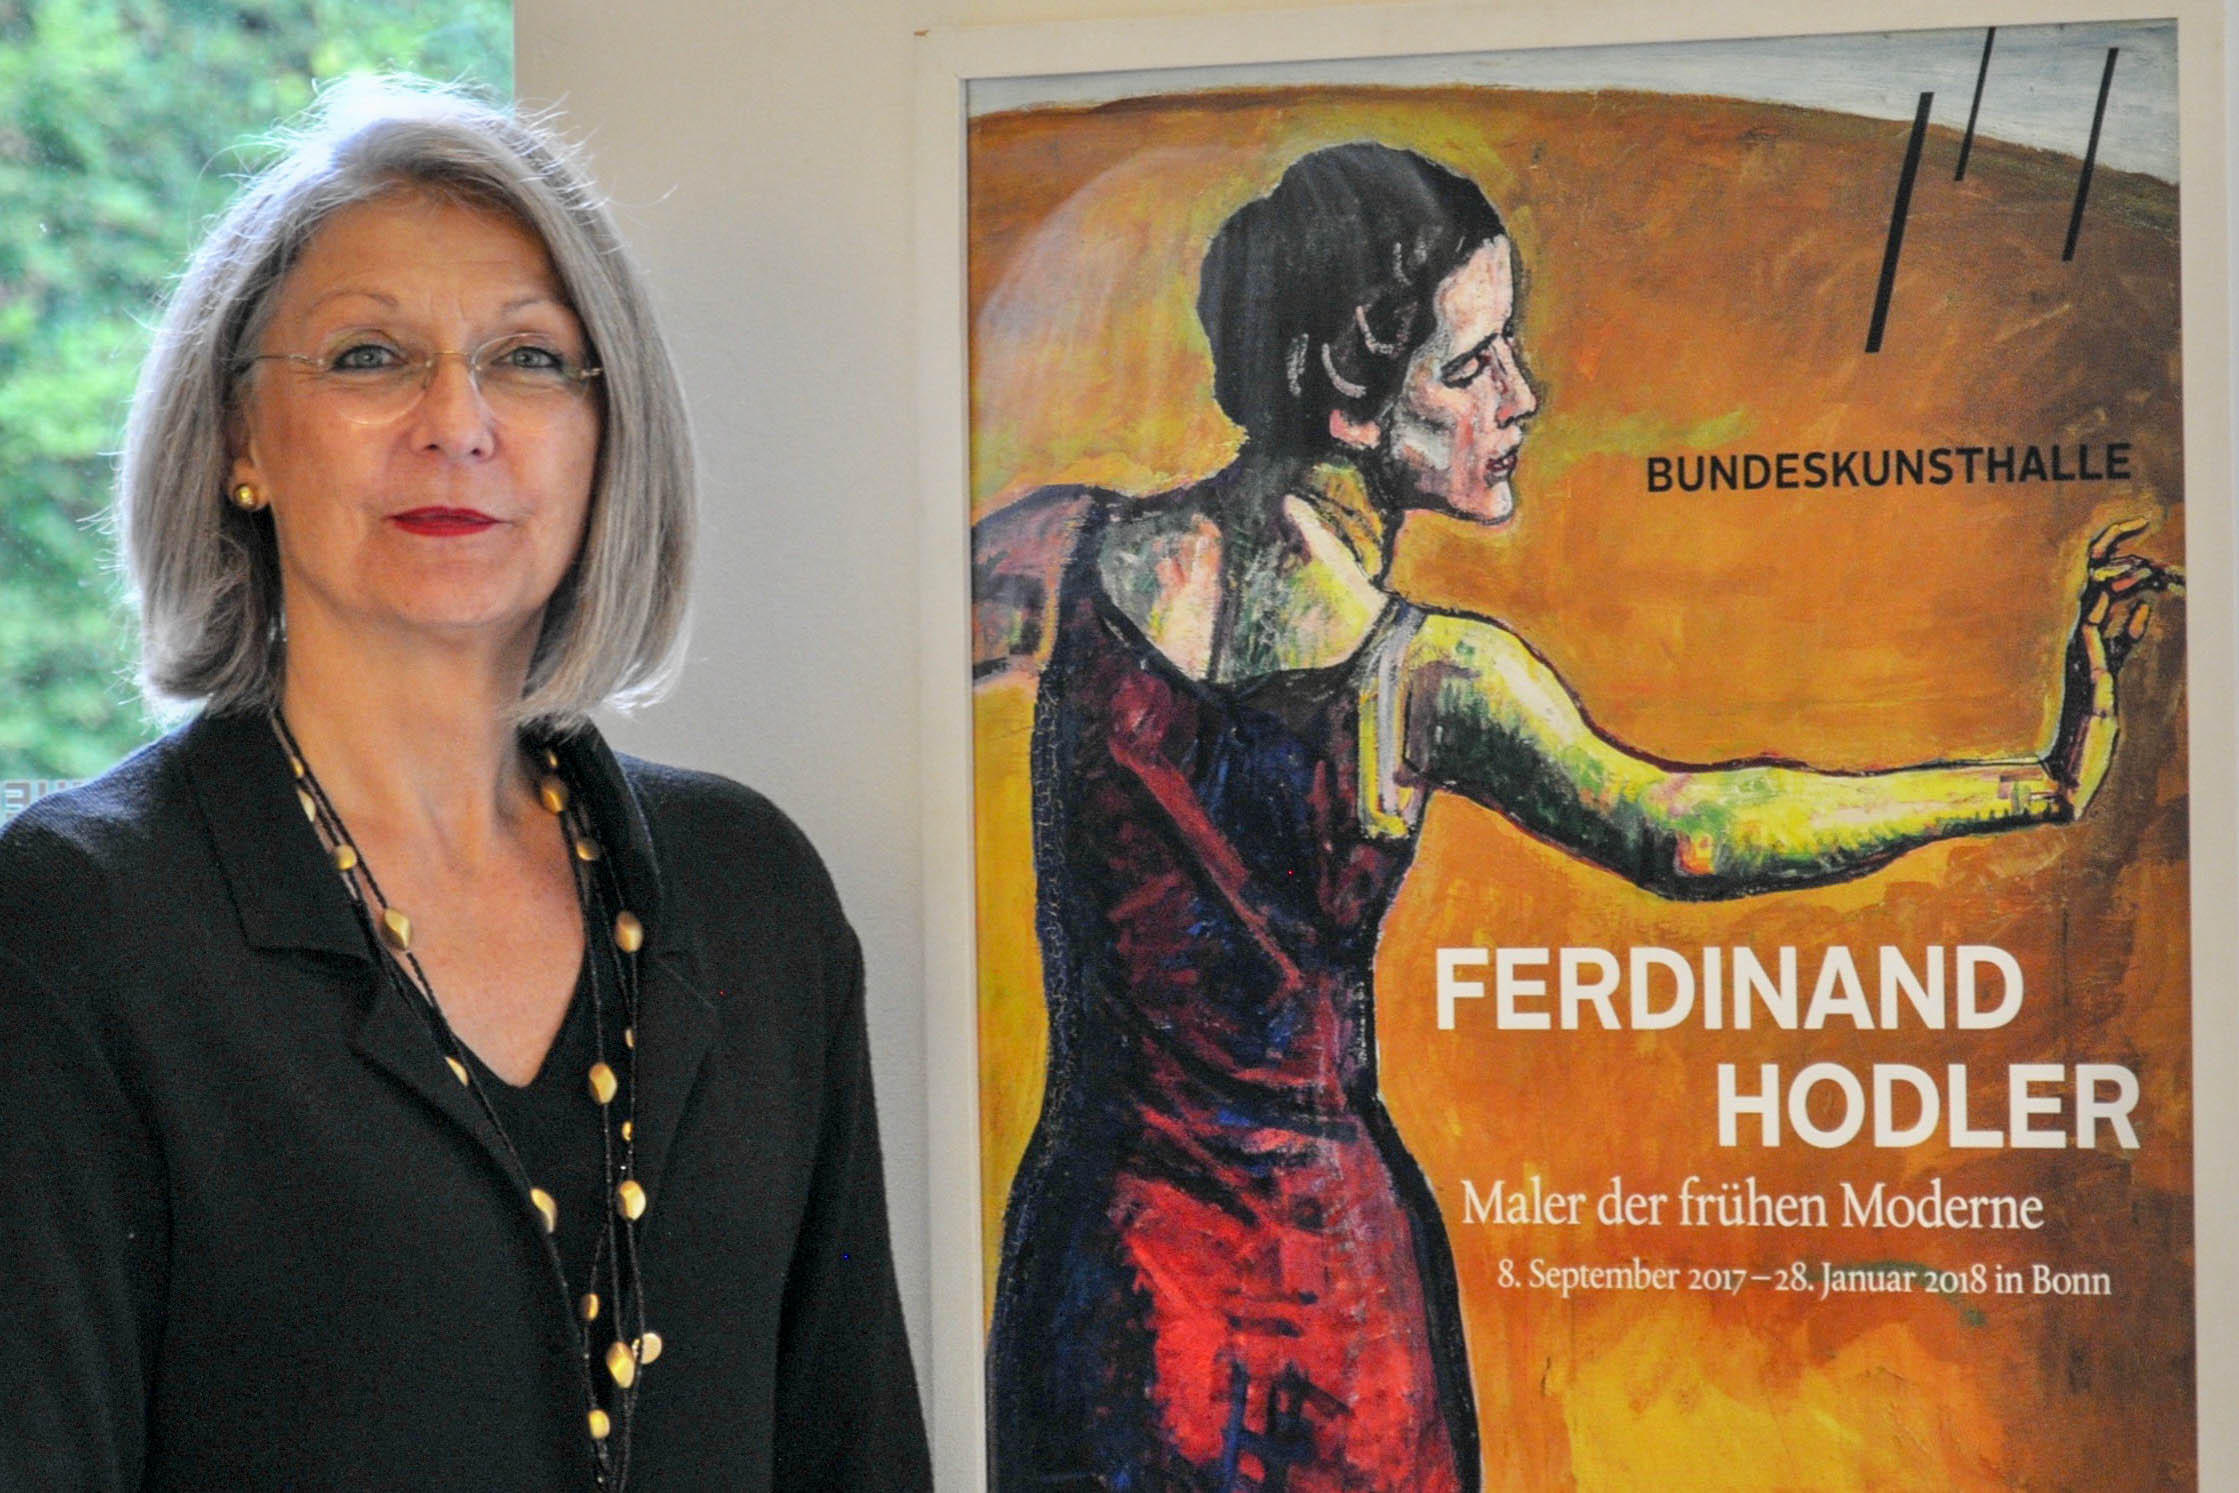 La curatrice Angelica Franke di fianco al cartellone pubblicitario dell esposizione su Ferdinand Hodler.